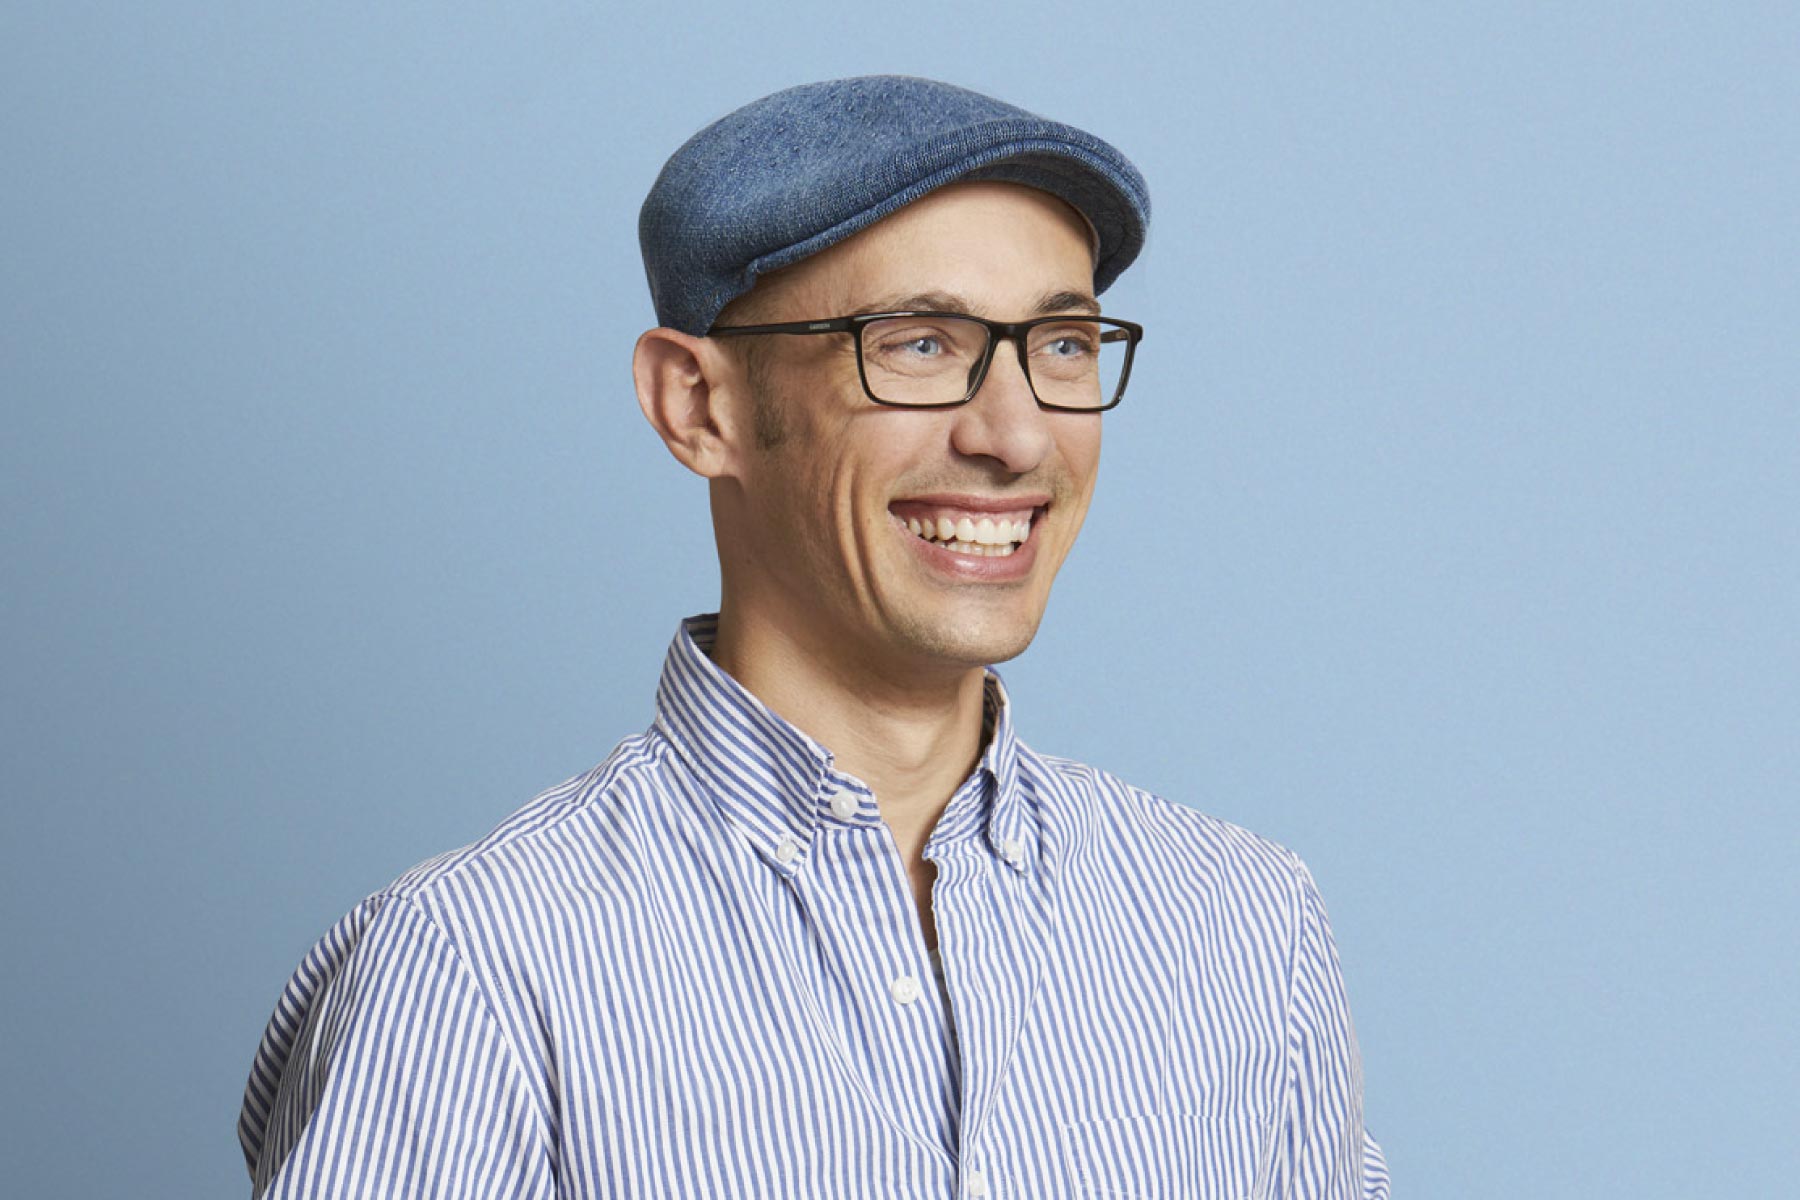 Headshot of Shopify founder and CEO Tobi Lutke